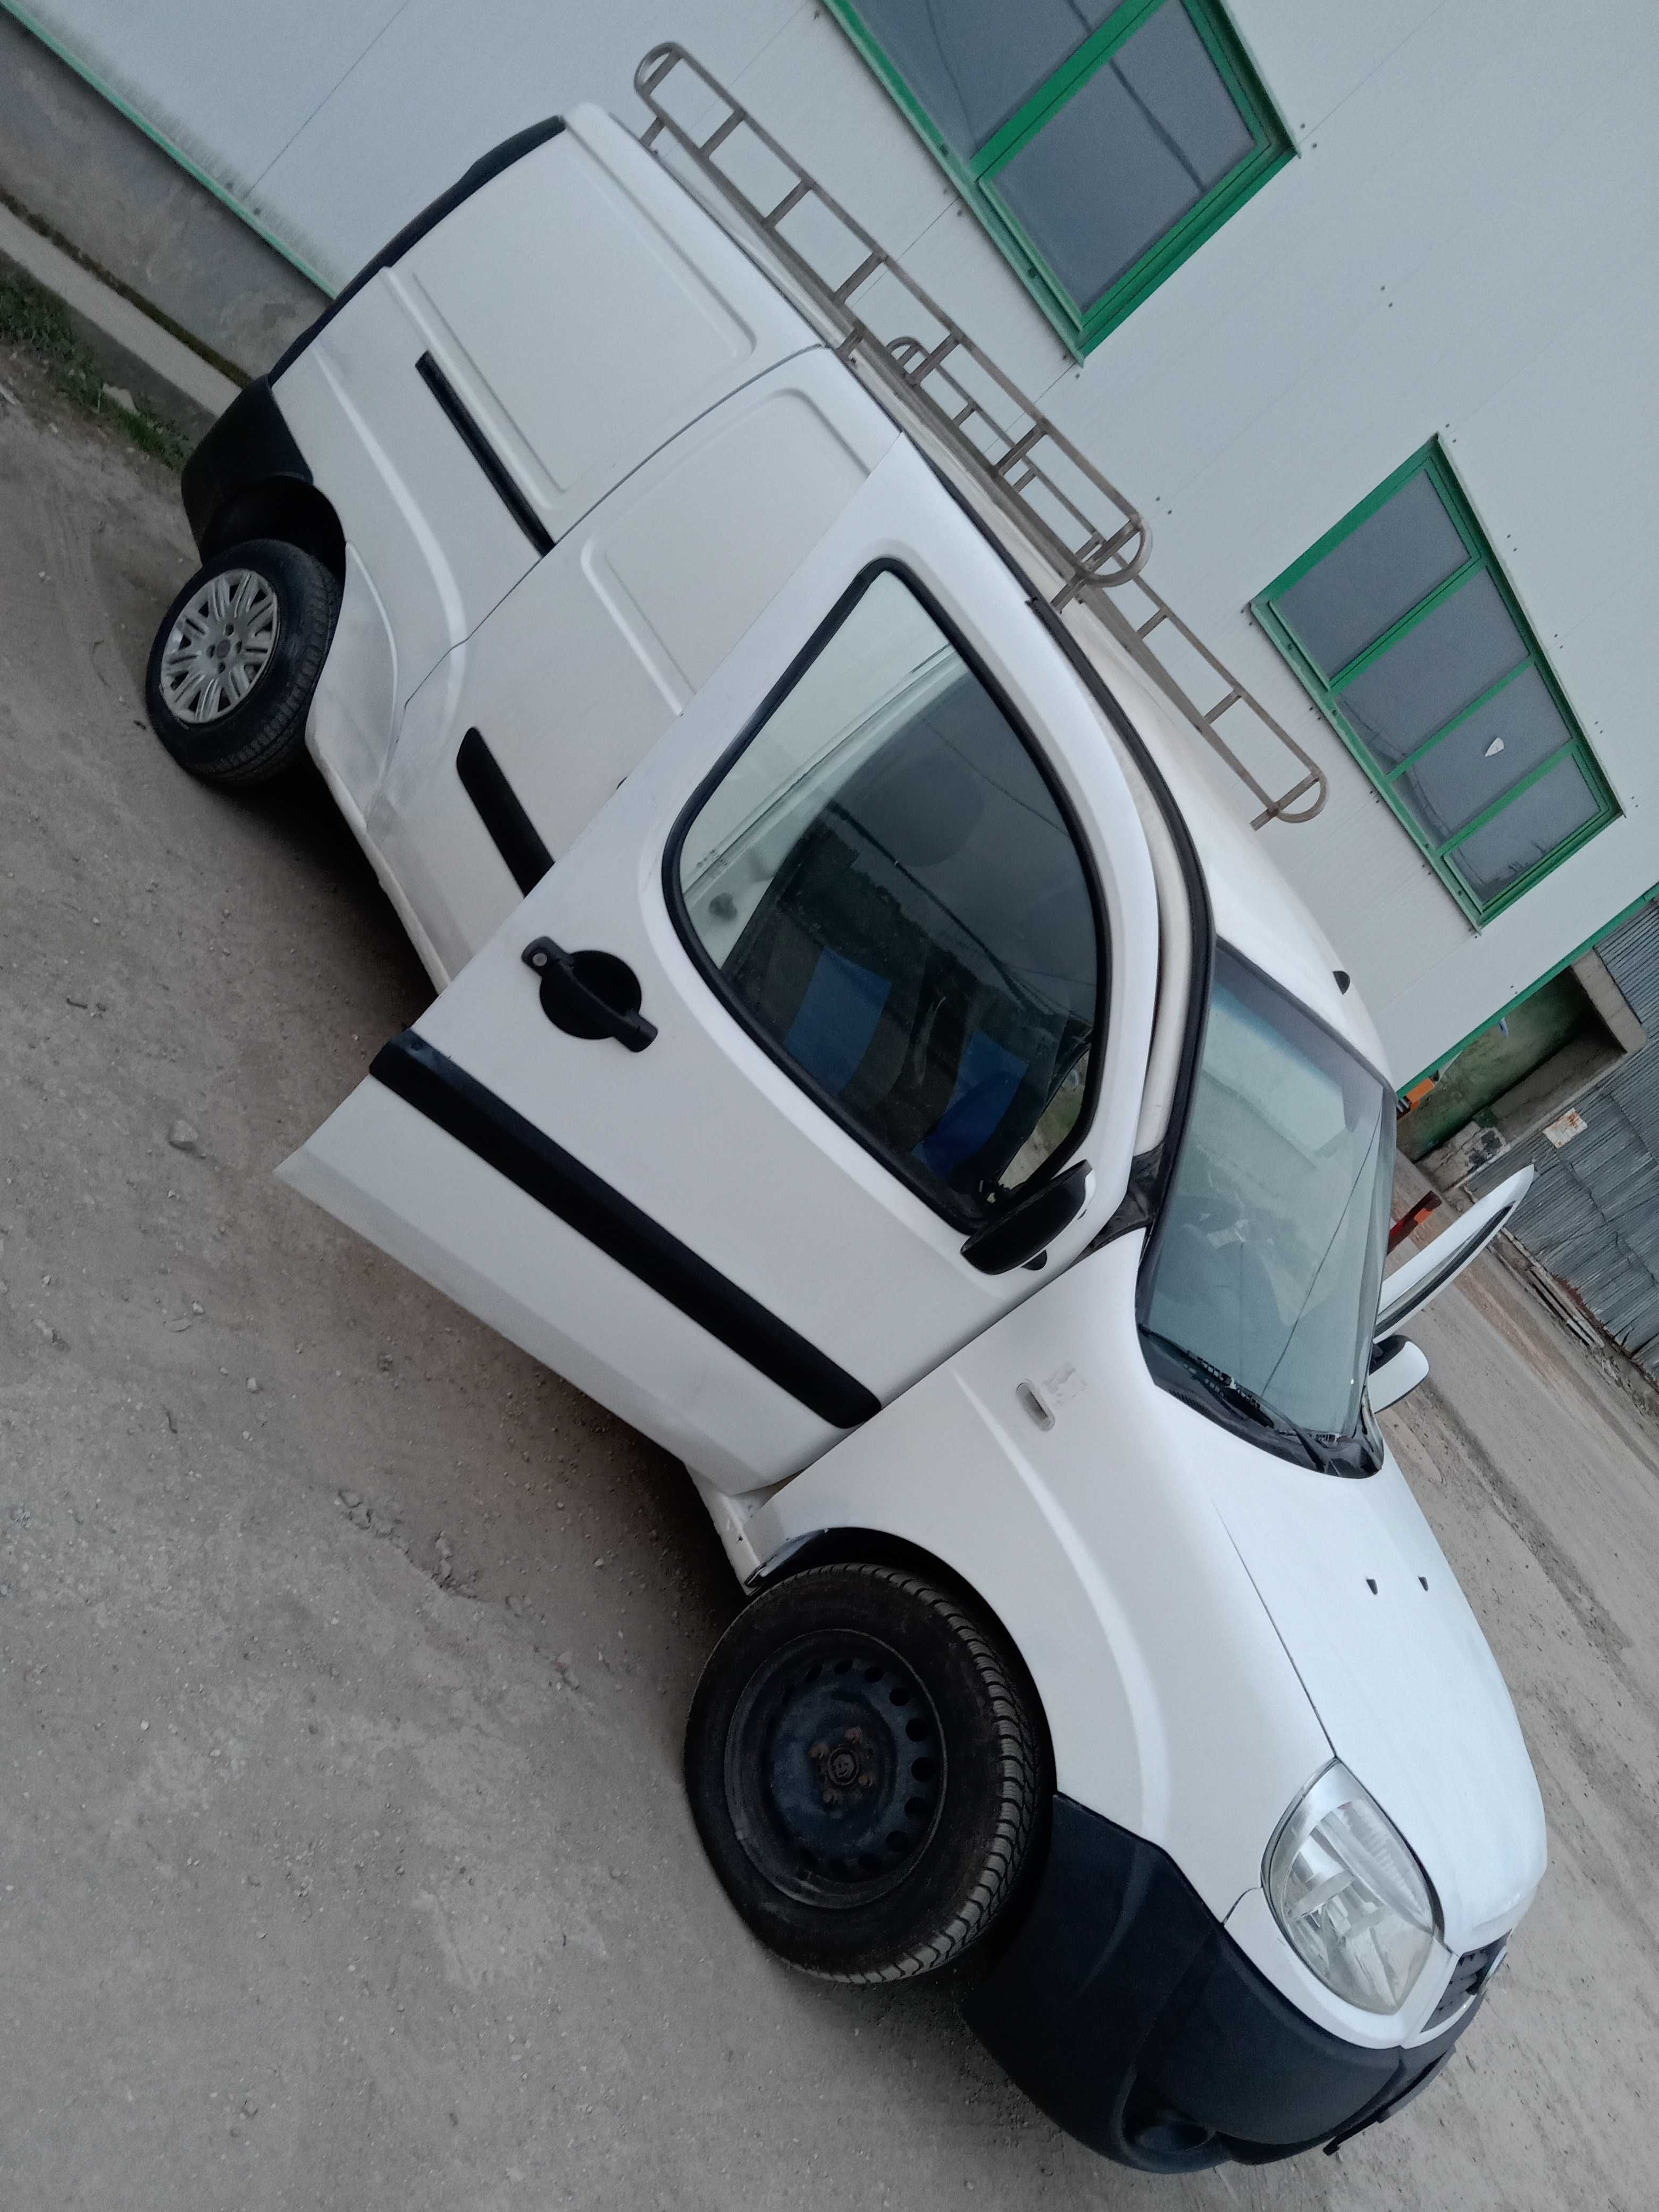 Fiat Doblo , Maxi 2008/km:215000 reali aer conditionat, motorina